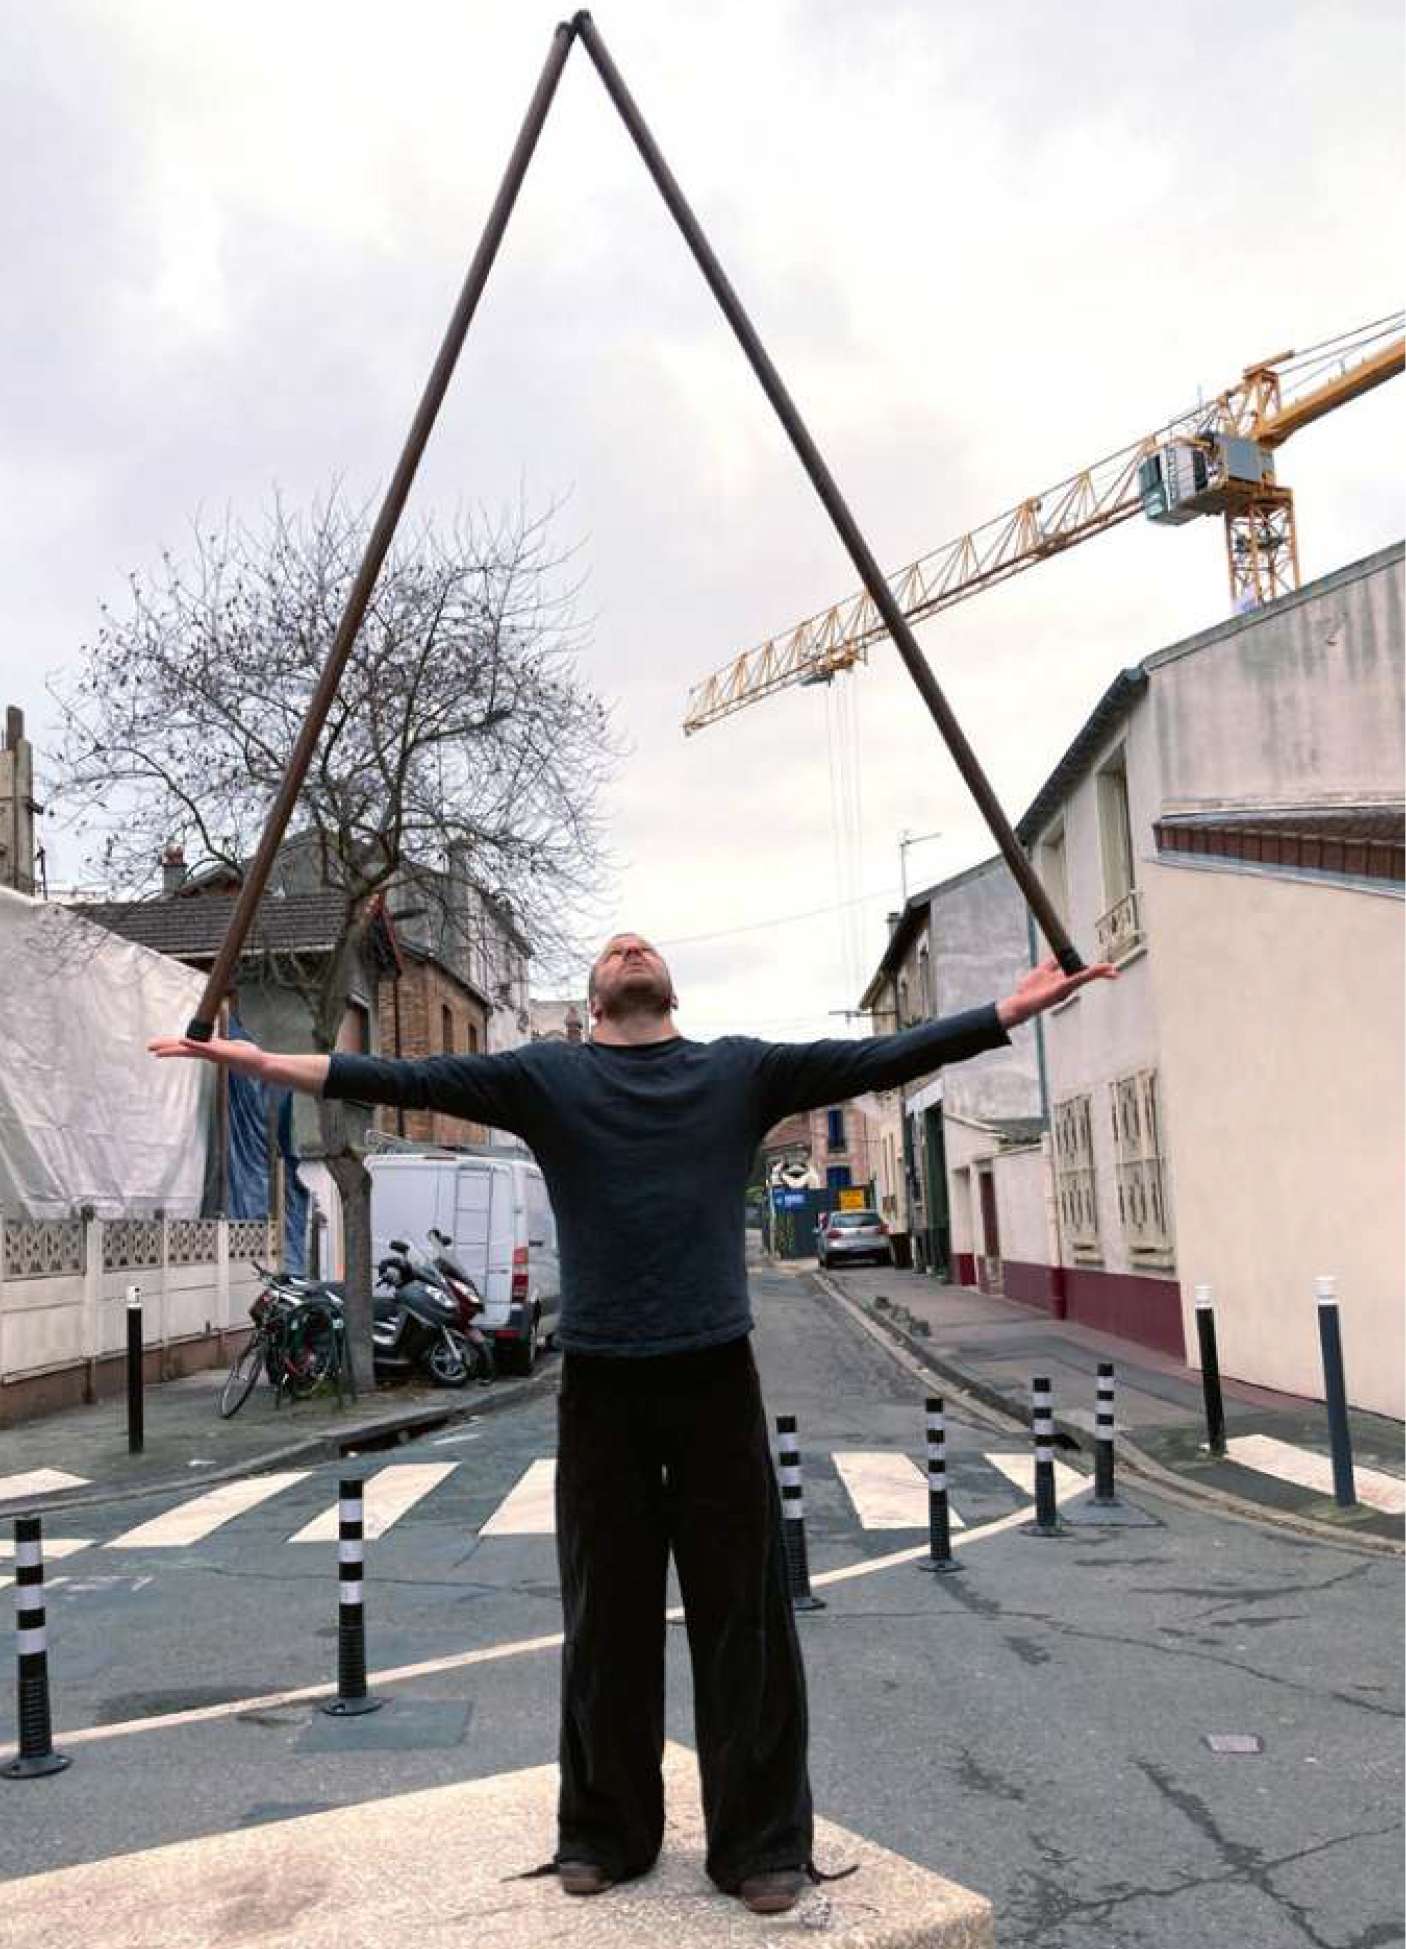 Un homme dans la rue tient 2 bâtons en équilibre sur ses paumes de main